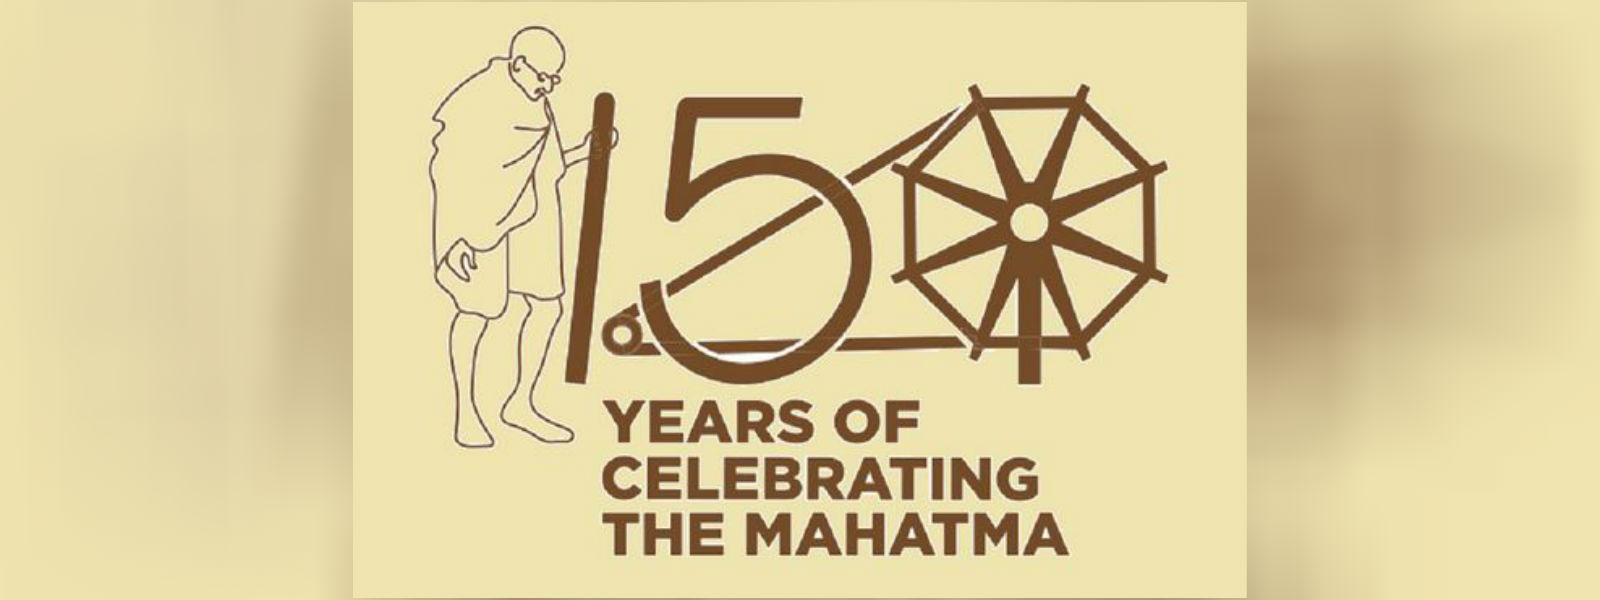 மகாத்மா காந்தியின் 150ஆவது ஜனன தினம் இன்று